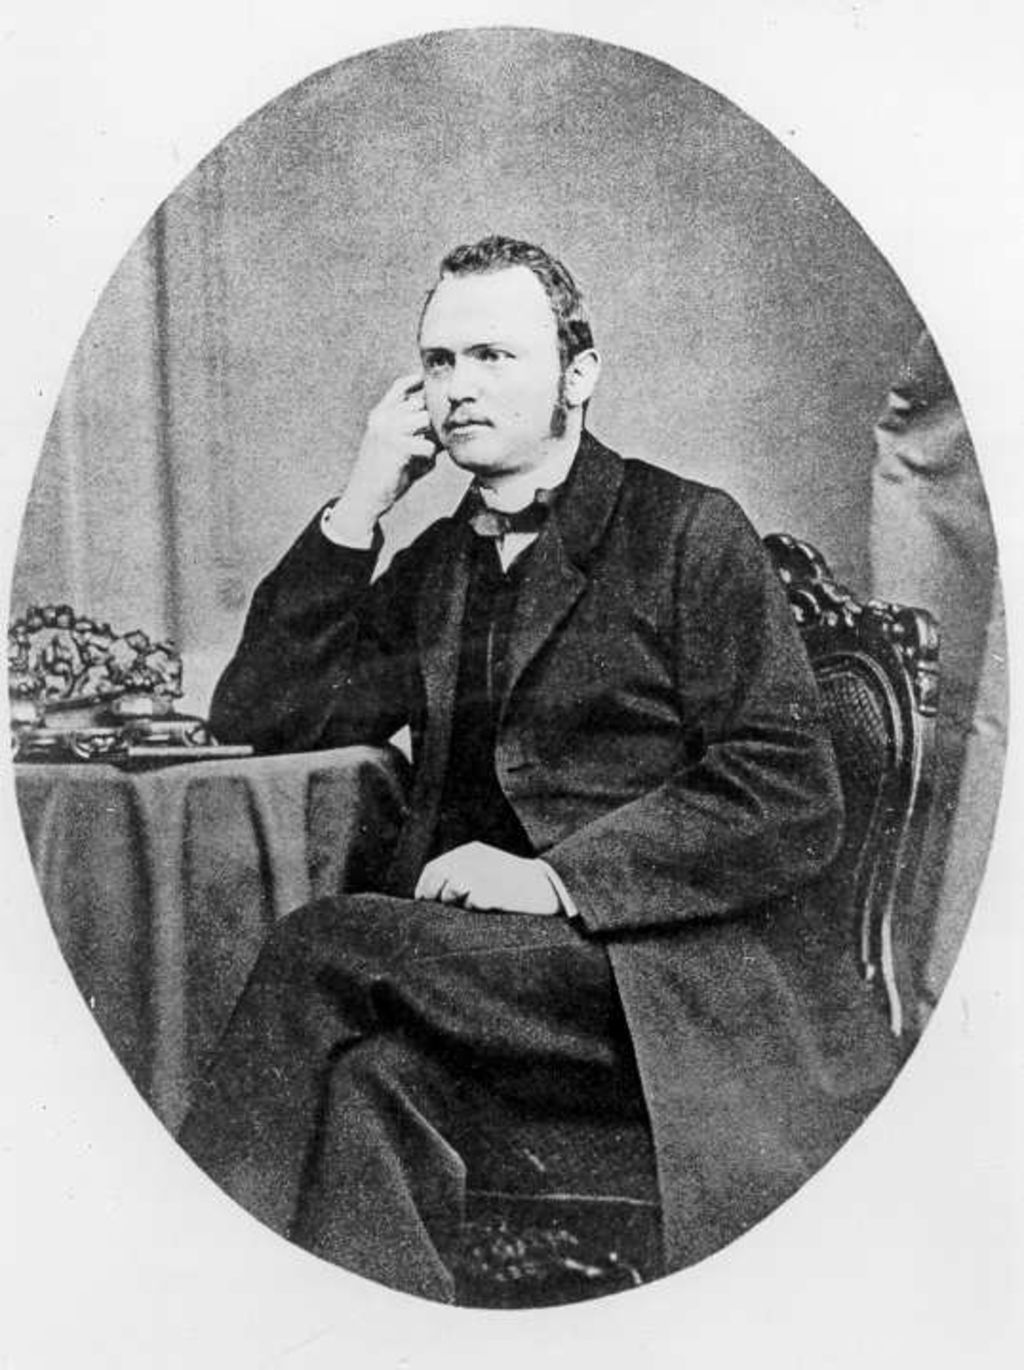 Foto: Siemens, Georg, 1866